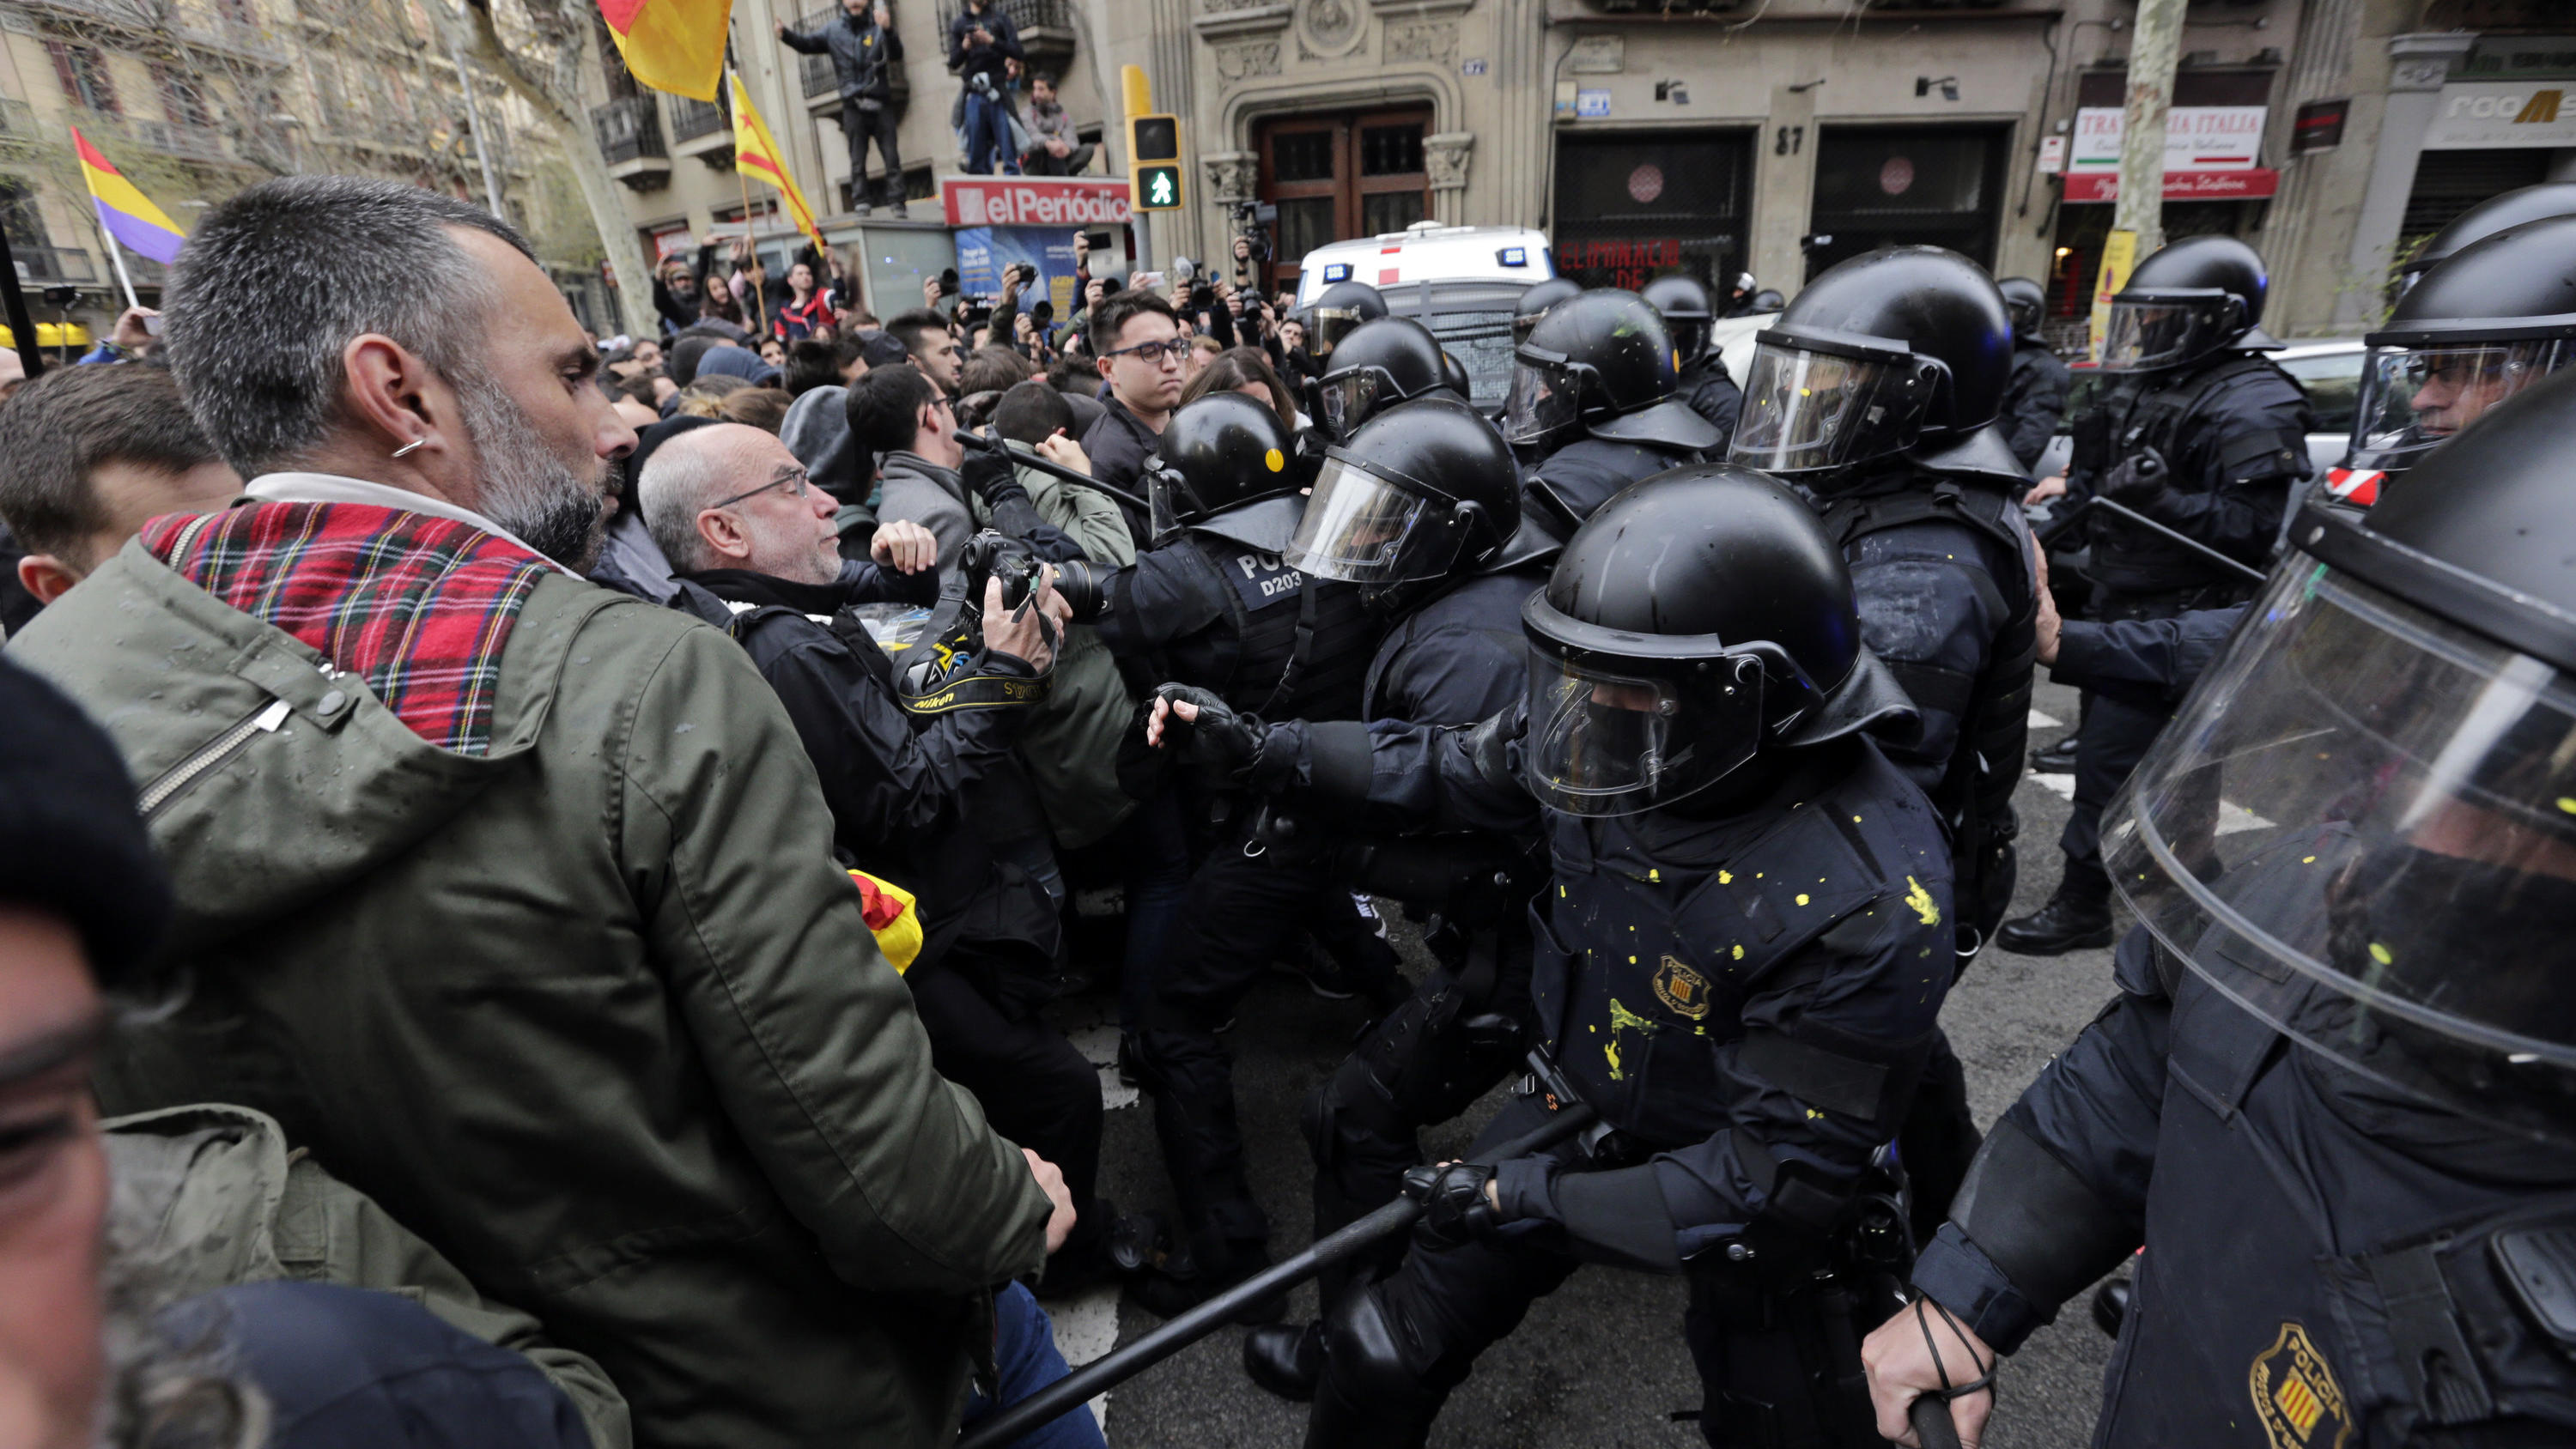 25.03.2018, Spanien, Barcelona: Polizisten stoßen mit Demonstranten zusammen, die für die Unabhängigkeit Kataloniens sind, und in Richtung des spanischen Regierungsgebäudes marschieren. Die Demonstranten verlangen die Entlassung katalanischer Politik